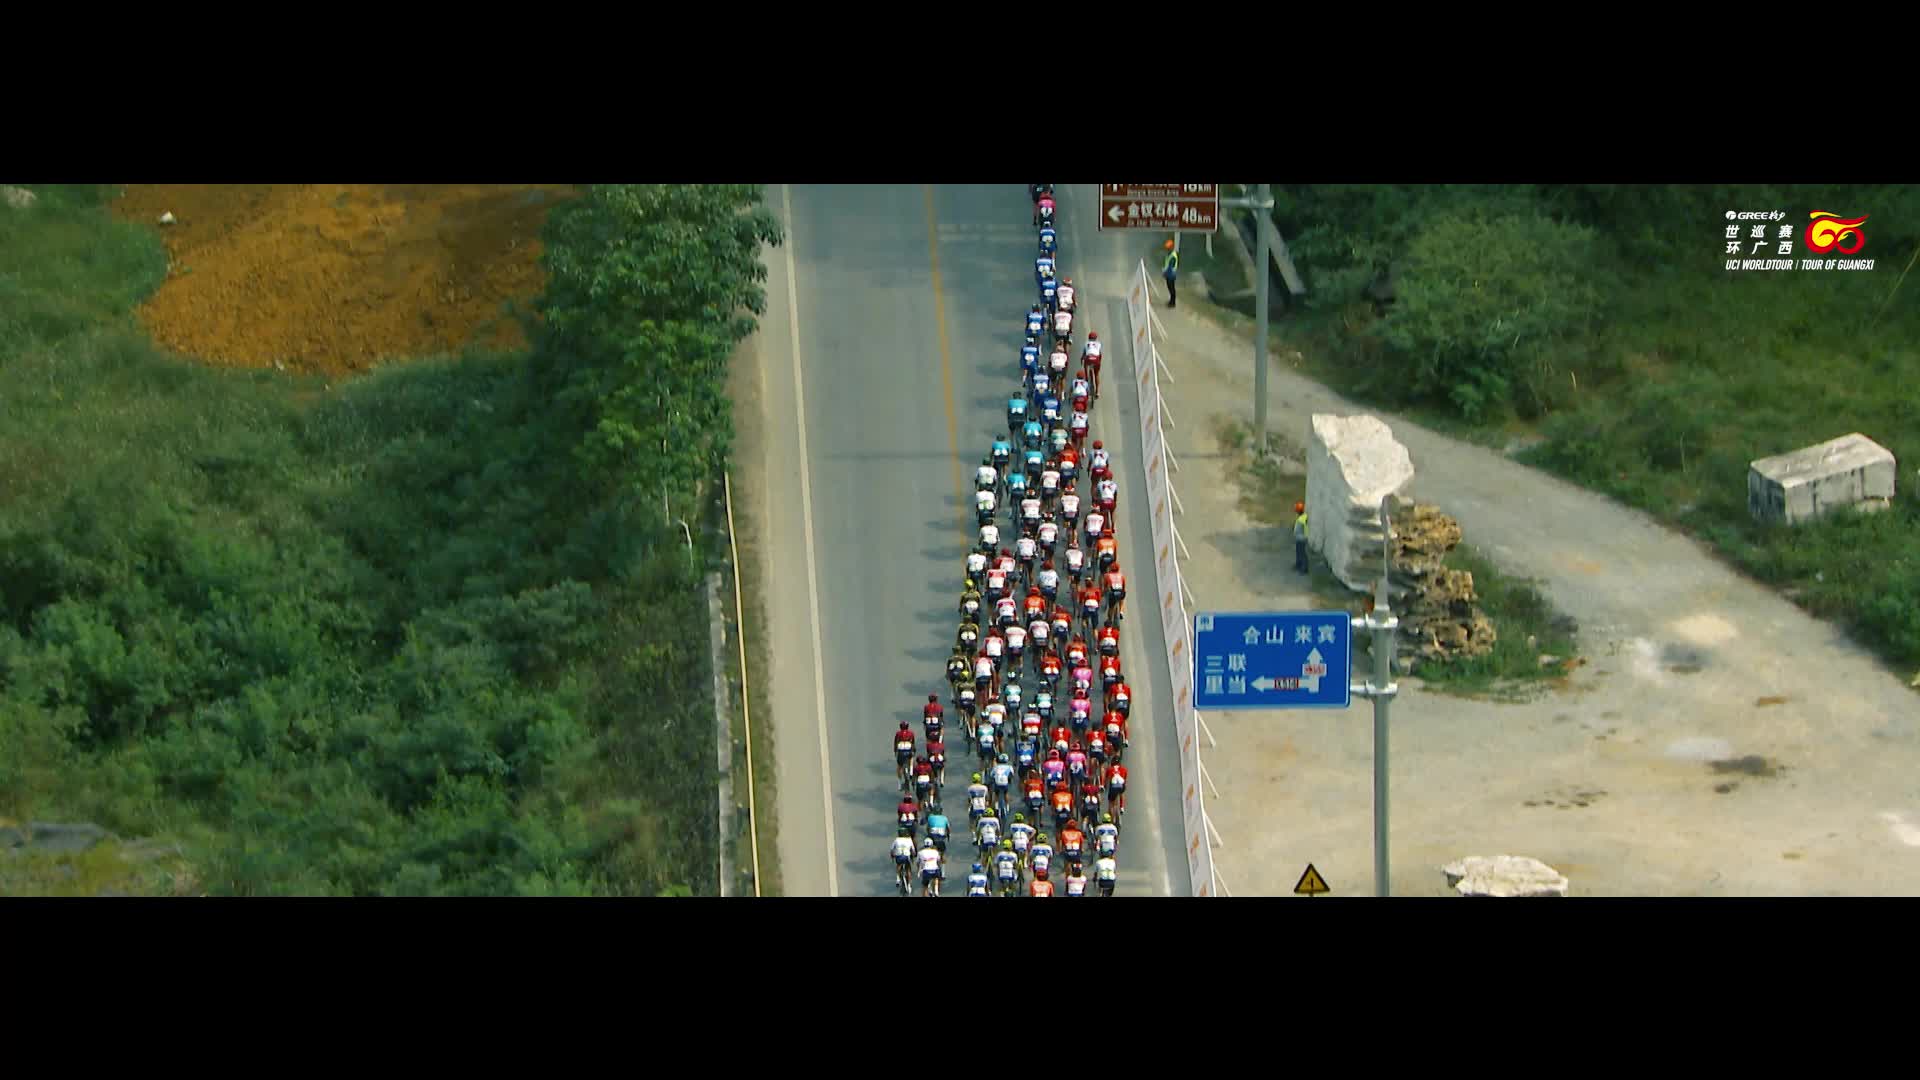 #2023年格力-环广西公路自行车世界巡回赛  作为中国唯一的公路自行车世界巡回赛 睽违三年之久即将